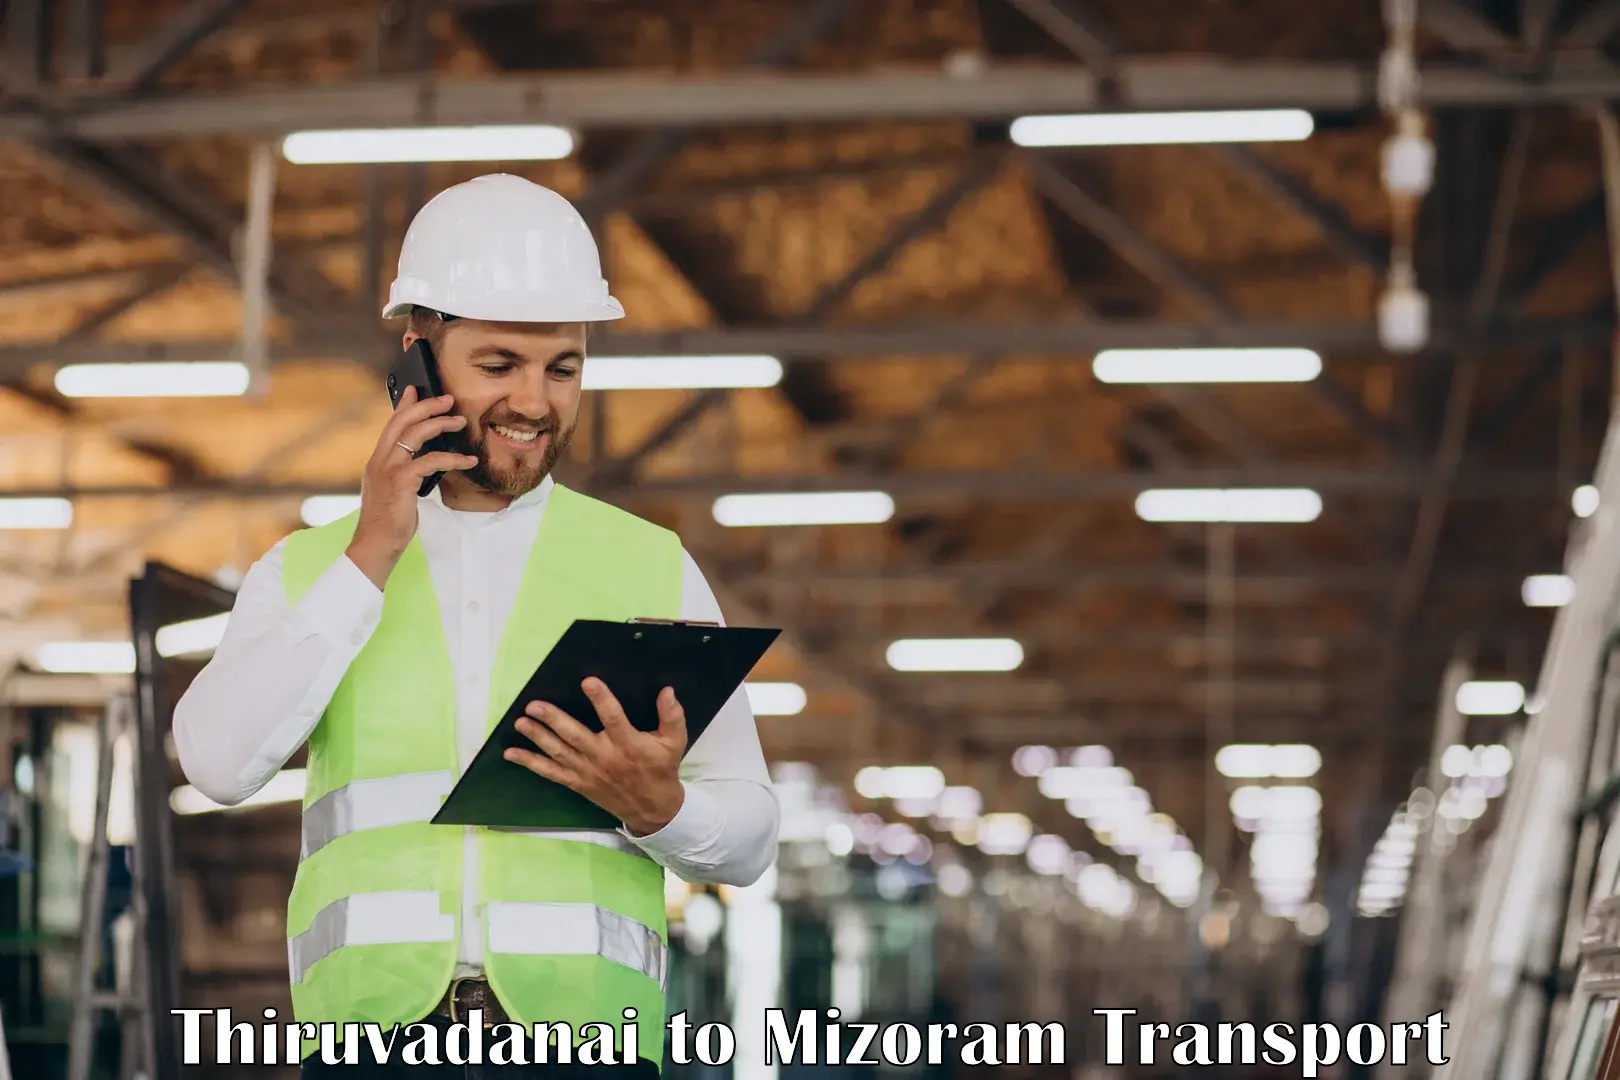 Transport in sharing in Thiruvadanai to Mizoram